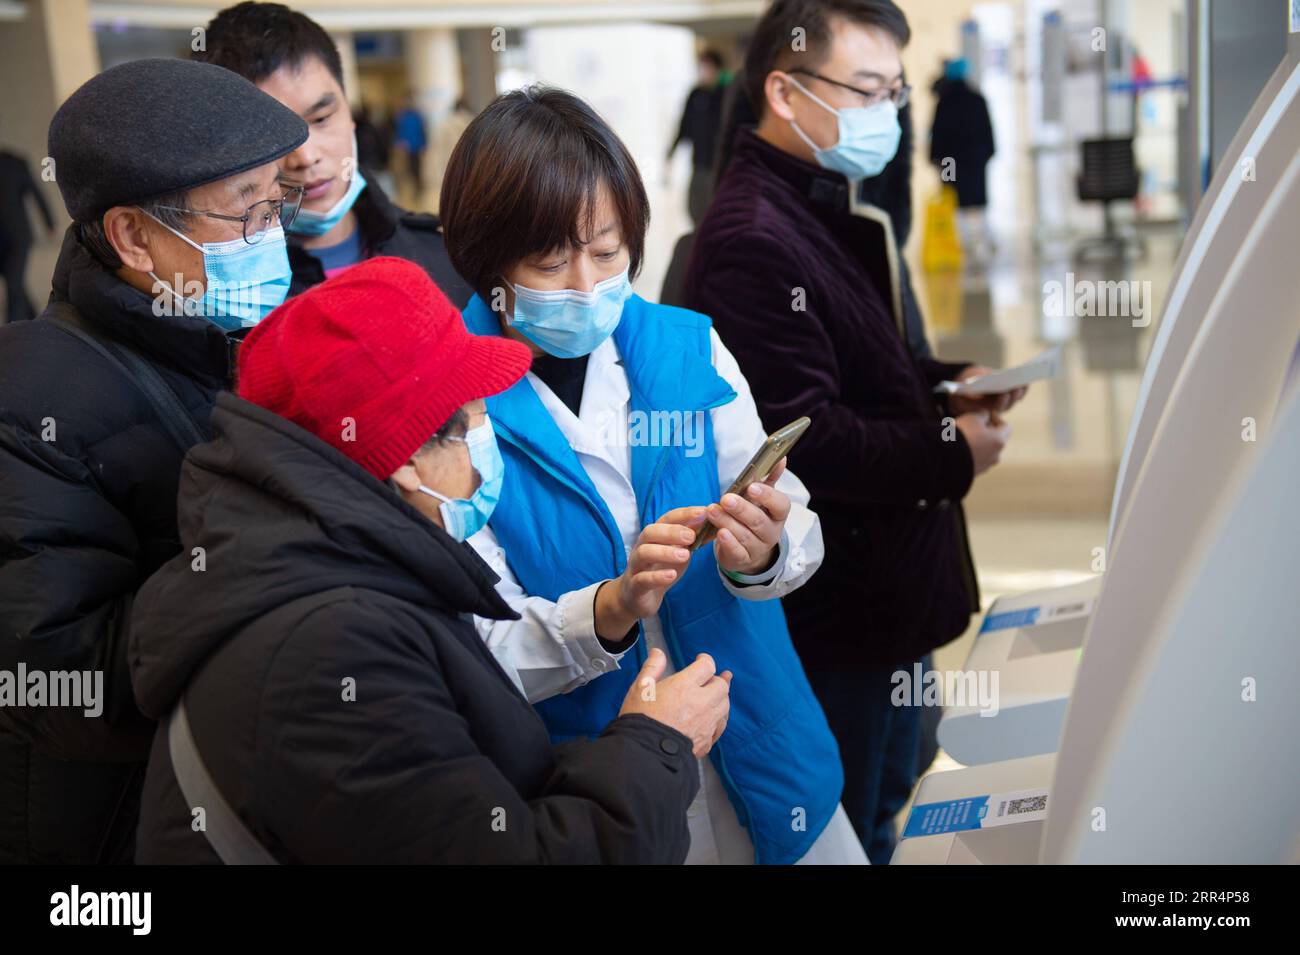 201210 -- PECHINO, 10 dicembre 2020 -- Un membro dello staff aiuta gli anziani a pagare le bollette dell'ospedale tramite telefono cellulare presso l'ospedale Tiantan di Pechino sotto la Capital Medical University di Pechino, capitale della Cina, 9 dicembre 2020. La Cina ha lanciato una campagna triennale per aiutare gli anziani del paese a superare il divario digitale e a godere dello sviluppo di tecnologie intelligenti. Il governo ha recentemente pubblicato un piano che specifica le misure per aiutare gli anziani a superare le barriere all'uso delle tecnologie intelligenti mantenendo al contempo i servizi tradizionali per loro. Il piano, emesso dall'Ufficio generale del St Foto Stock